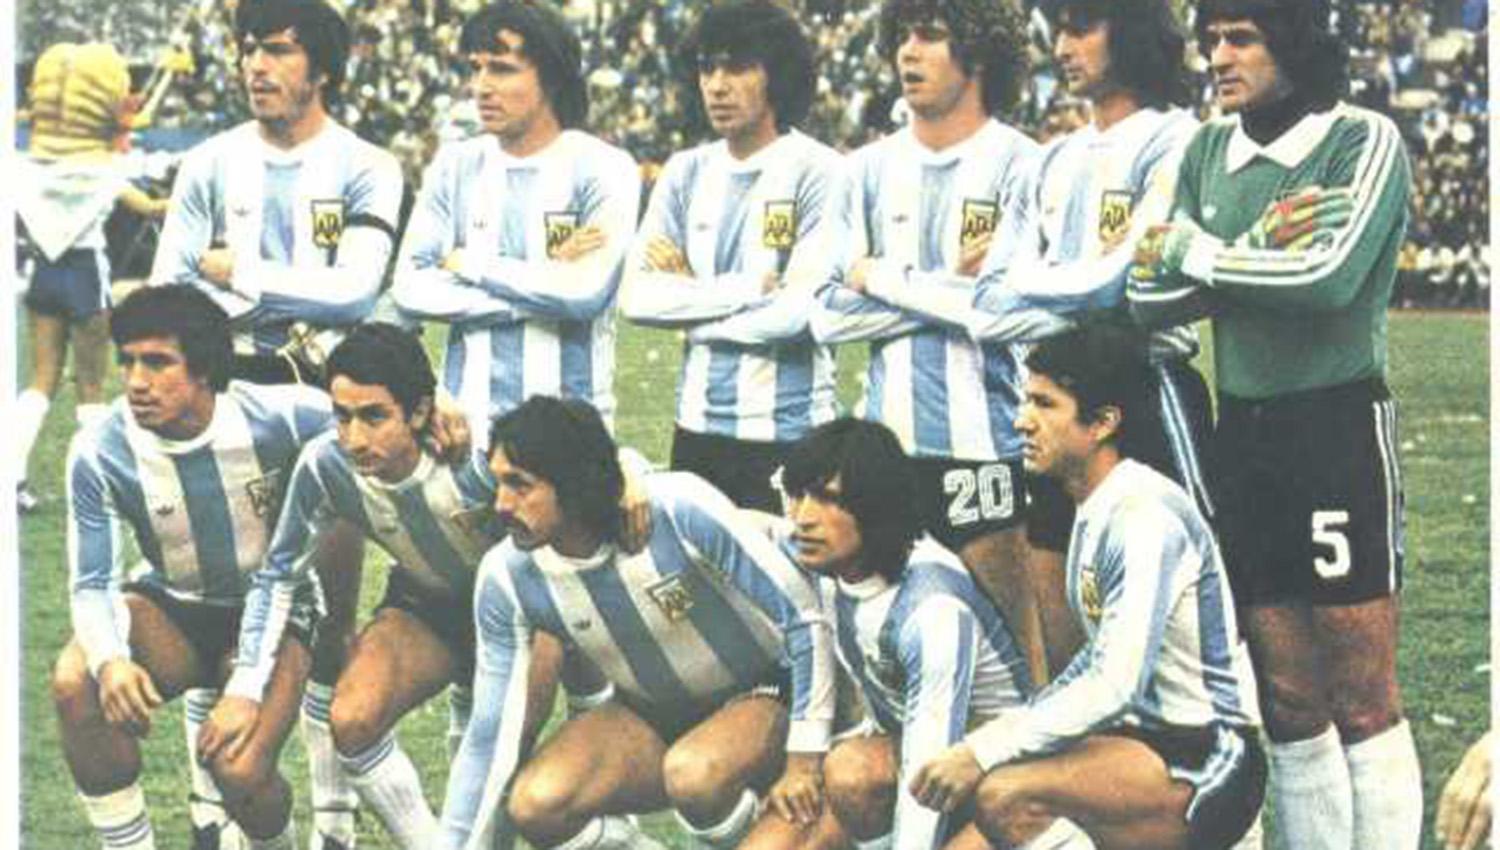 El equipo argentino que jugó la final contra Holanda. Parados: Passarella, Bertoni, Olguín, Tarantini, Kemps y Fillol. Agachados: Gallego, Ardiles, Luque, Ortiz y Galván. (ARCHIVO)